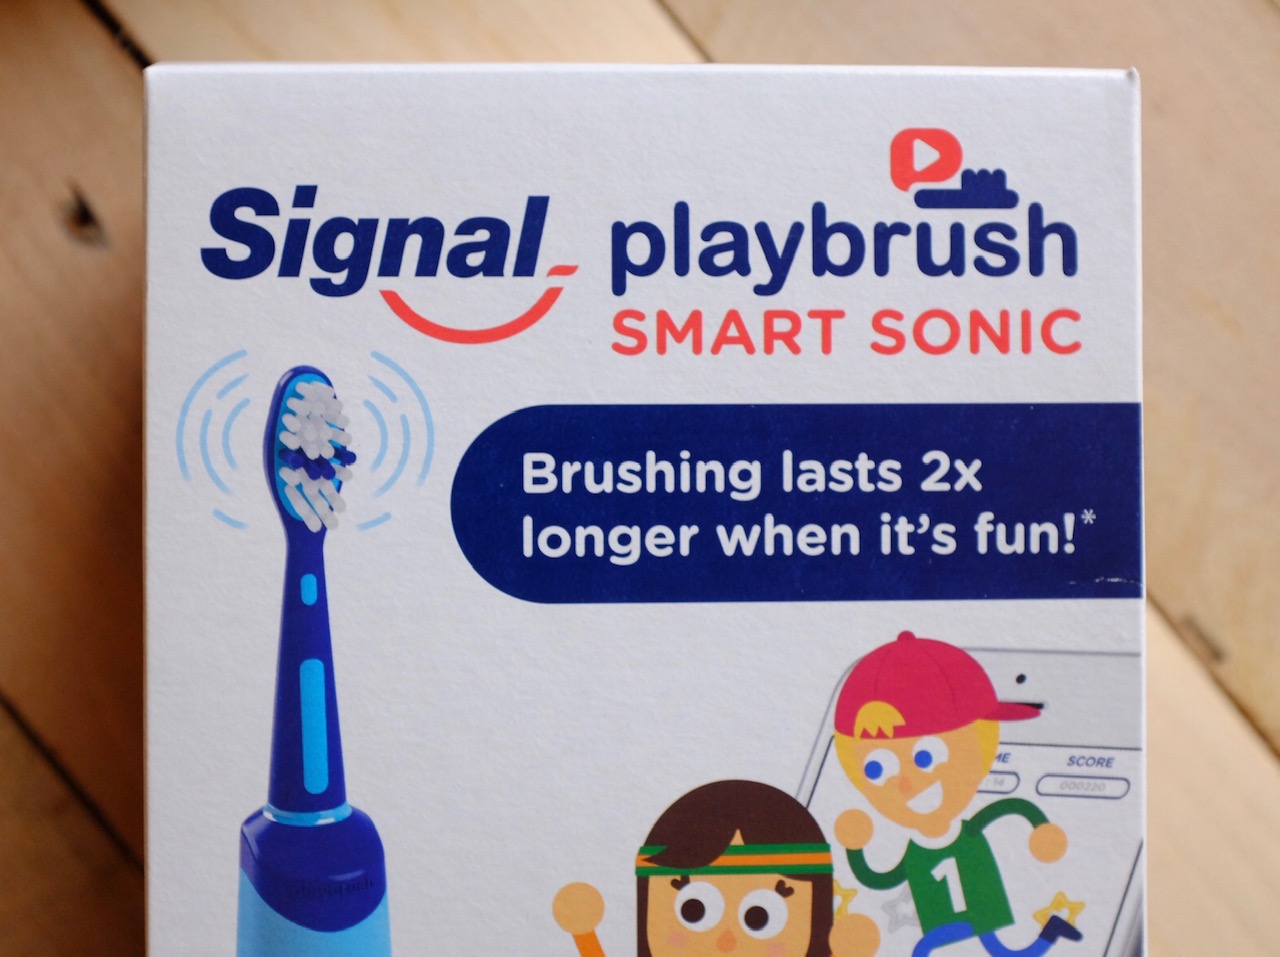 Playbrush smart sonic